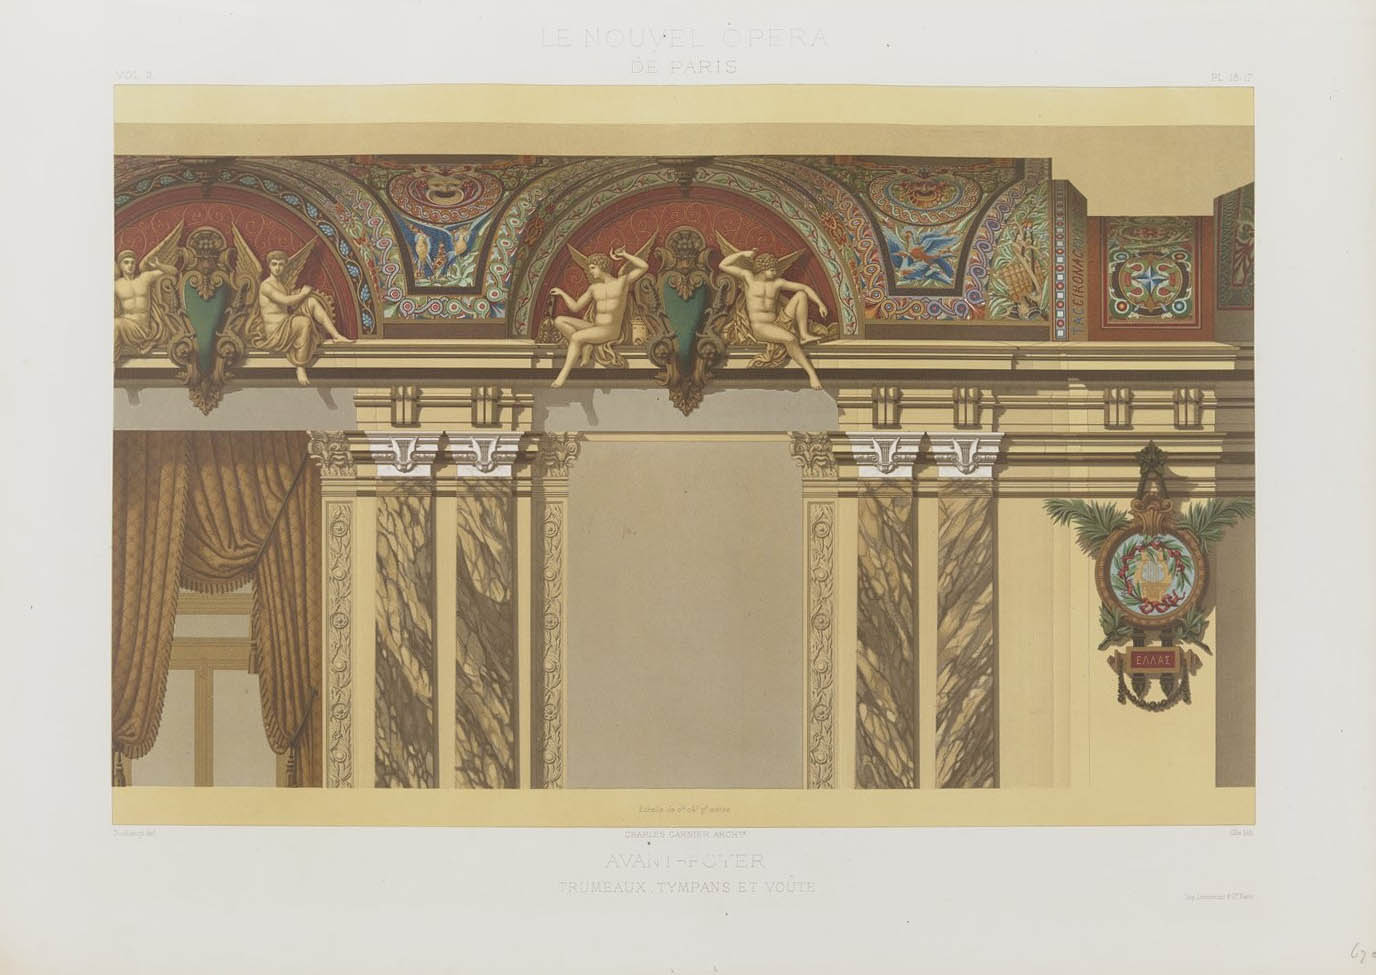 Avant-foyer, vol. II  © Cité de l'architecture & du patrimoine/Musée des Monuments français